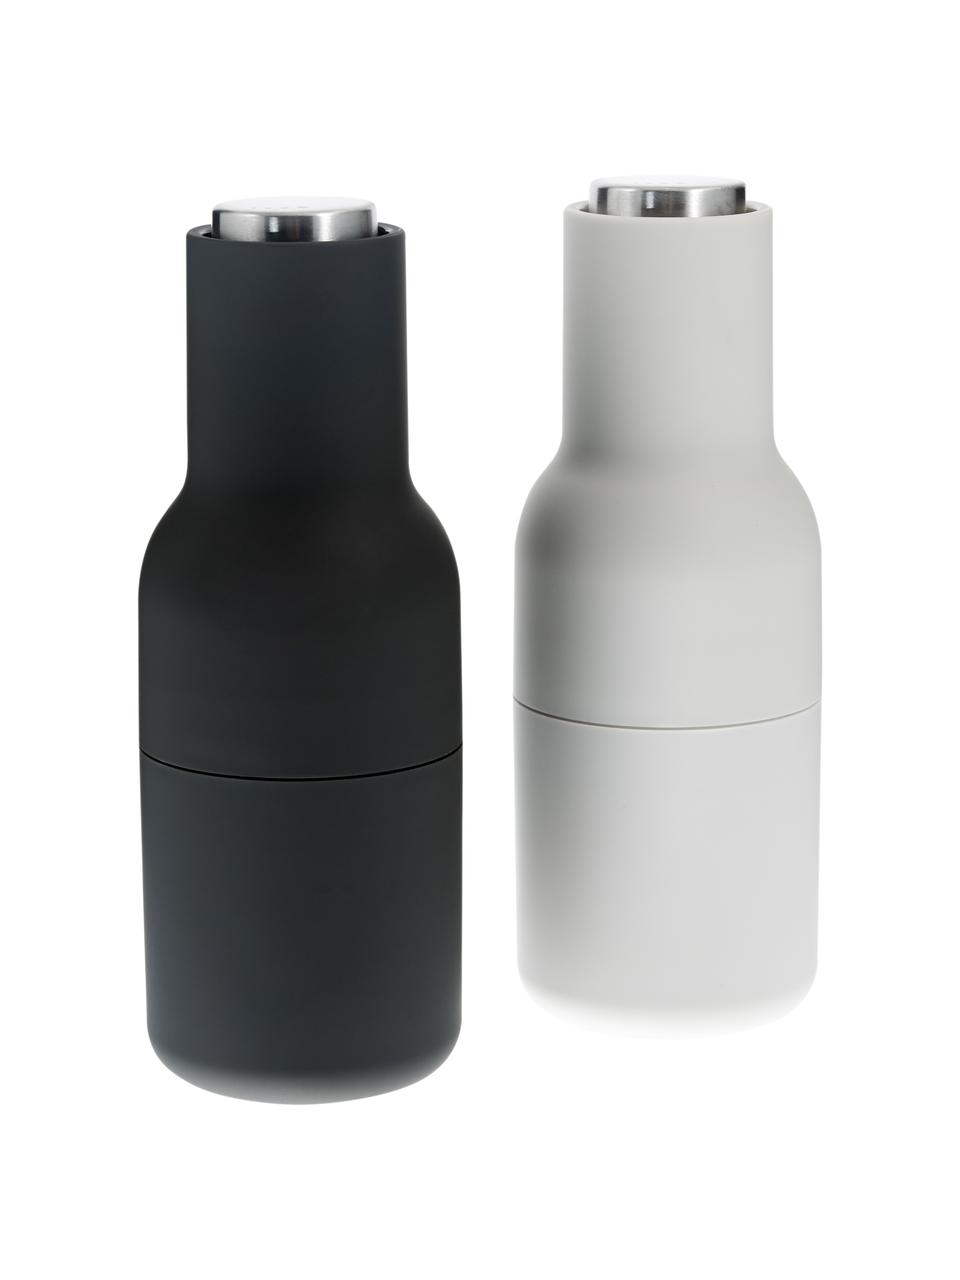 Designer zout & pepermolen Bottle Grinder met deksel van edelstaal, set van 2, Frame: kunststof, Deksel: edelstaal, Antraciet, lichtgrijs, zilverkleurig, Ø 8 x H 21 cm